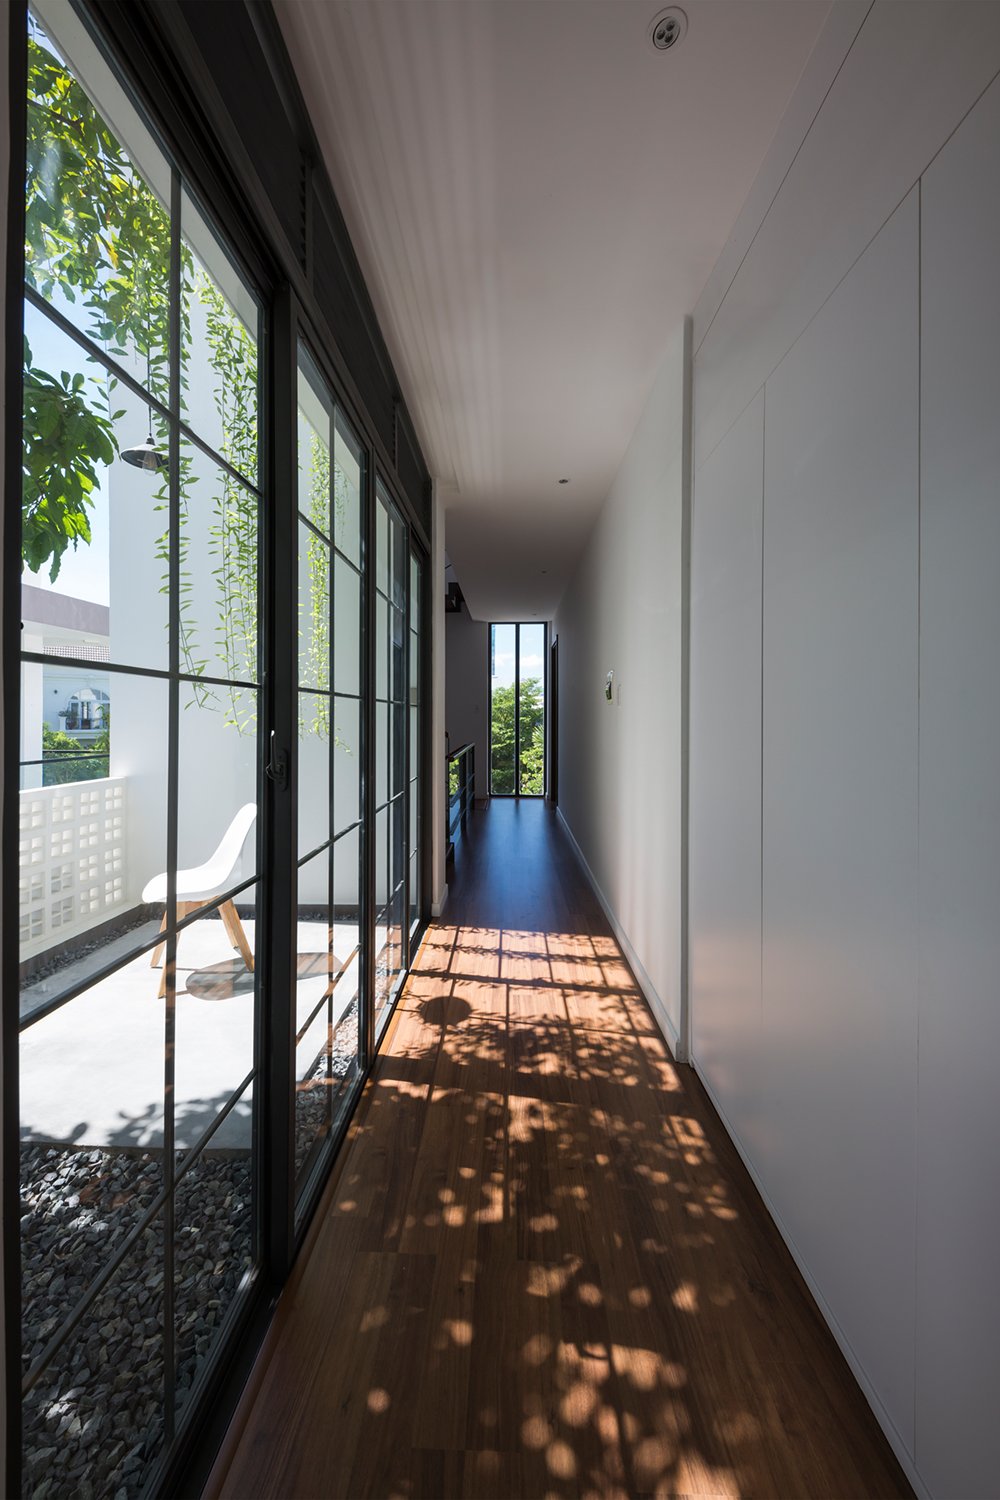 Hành lang dài nối giữa các căn phòng được làm bằng kính giúp mở rộng không gian